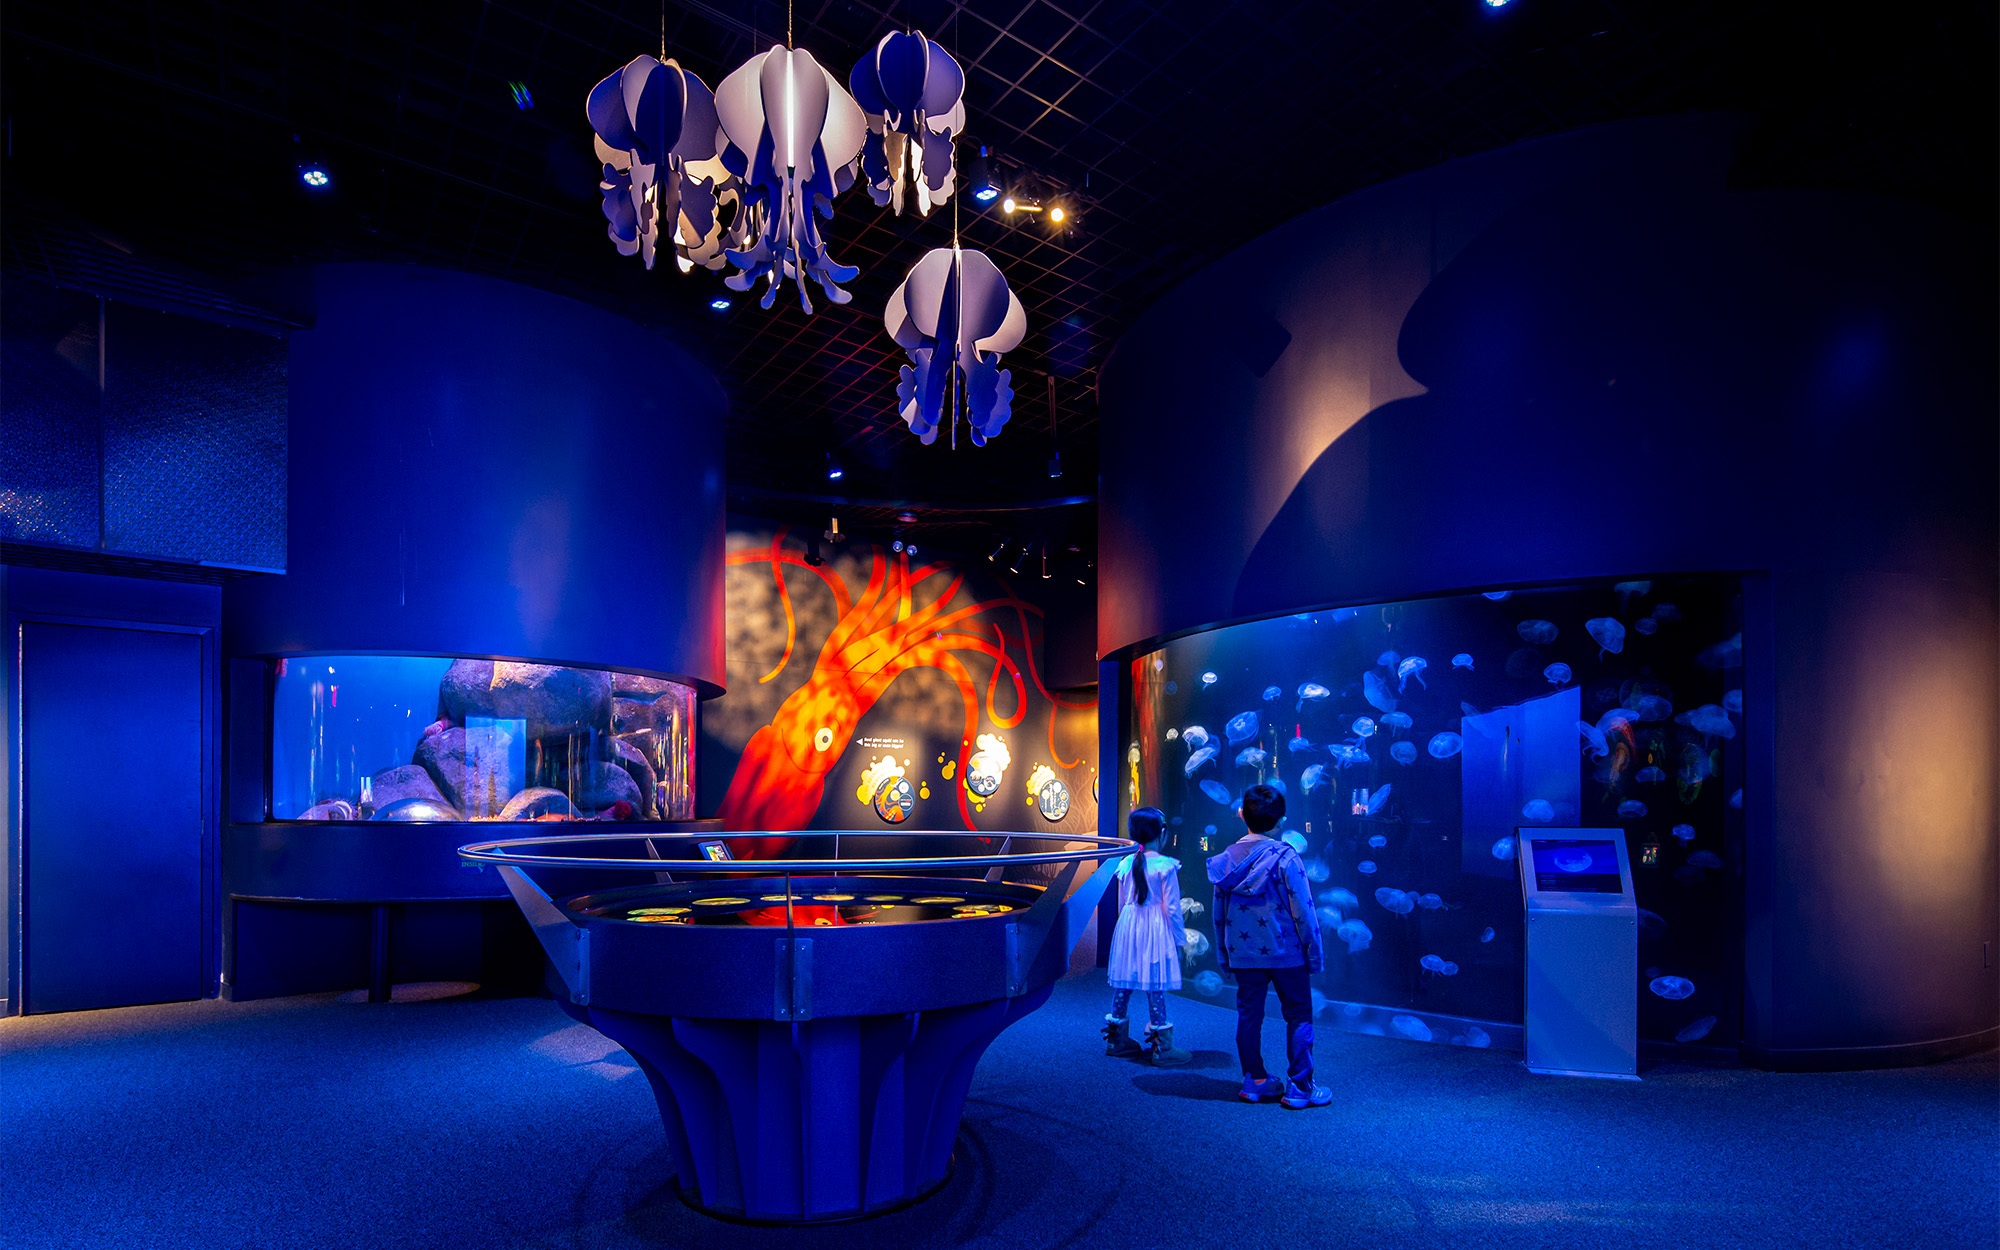 Exhibition design with jellyfish, squid, and aquarium tanks.